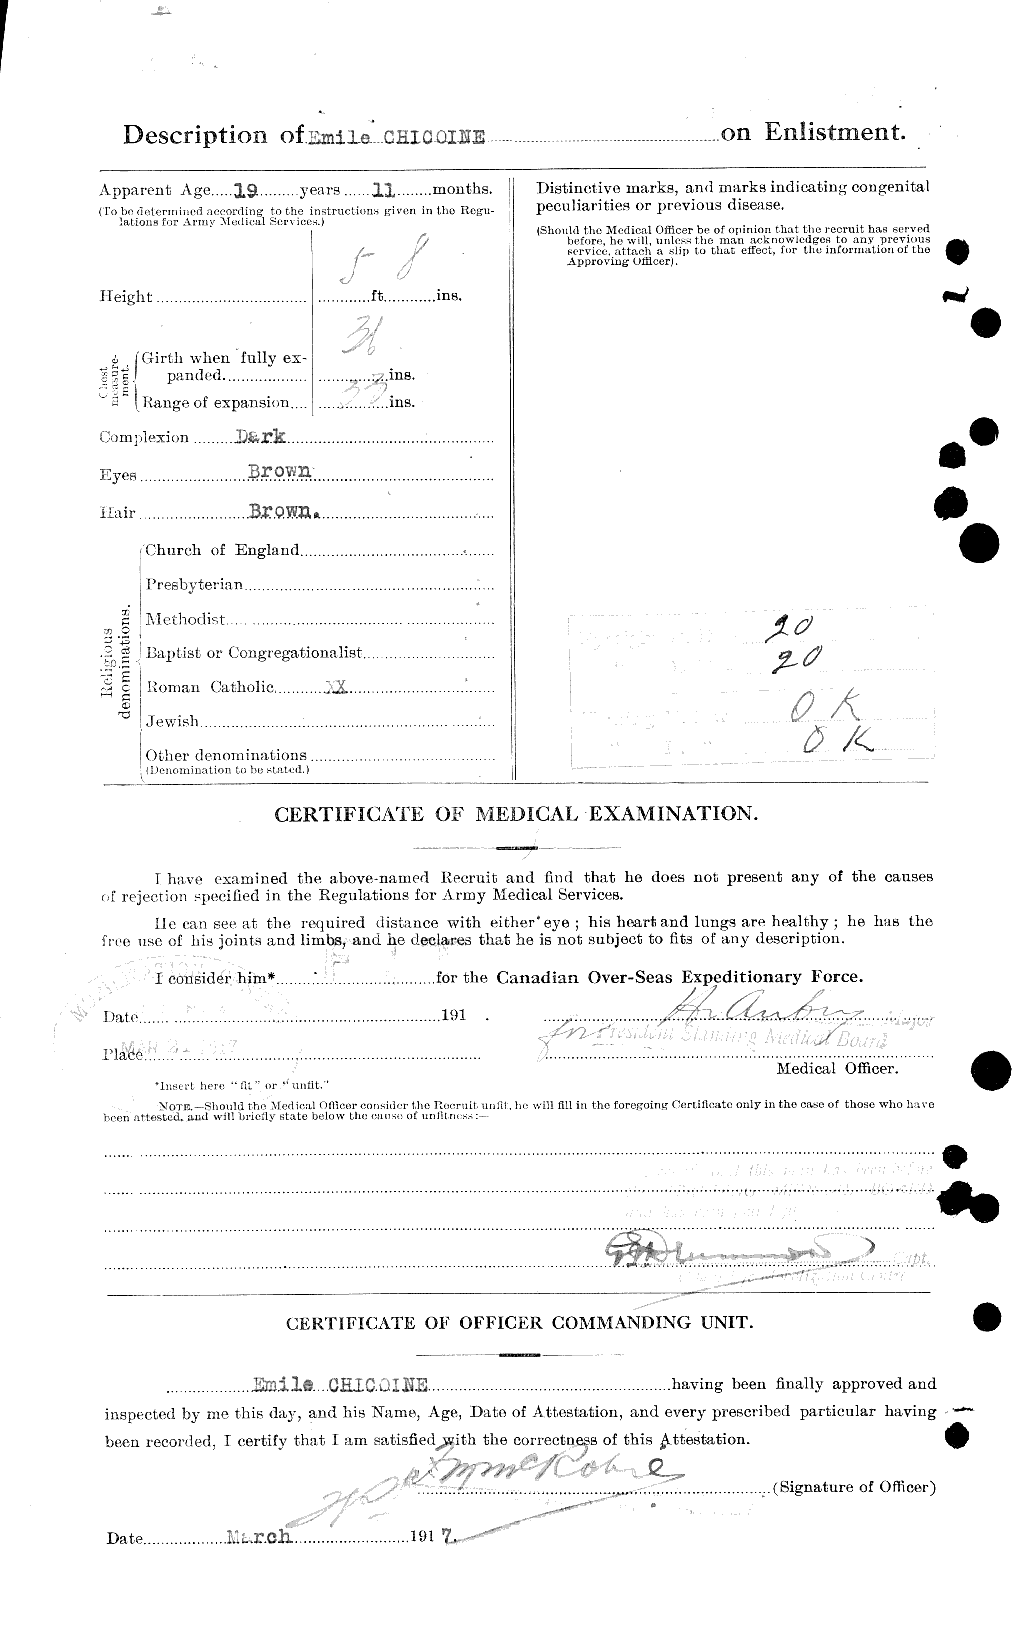 Dossiers du Personnel de la Première Guerre mondiale - CEC 017983b